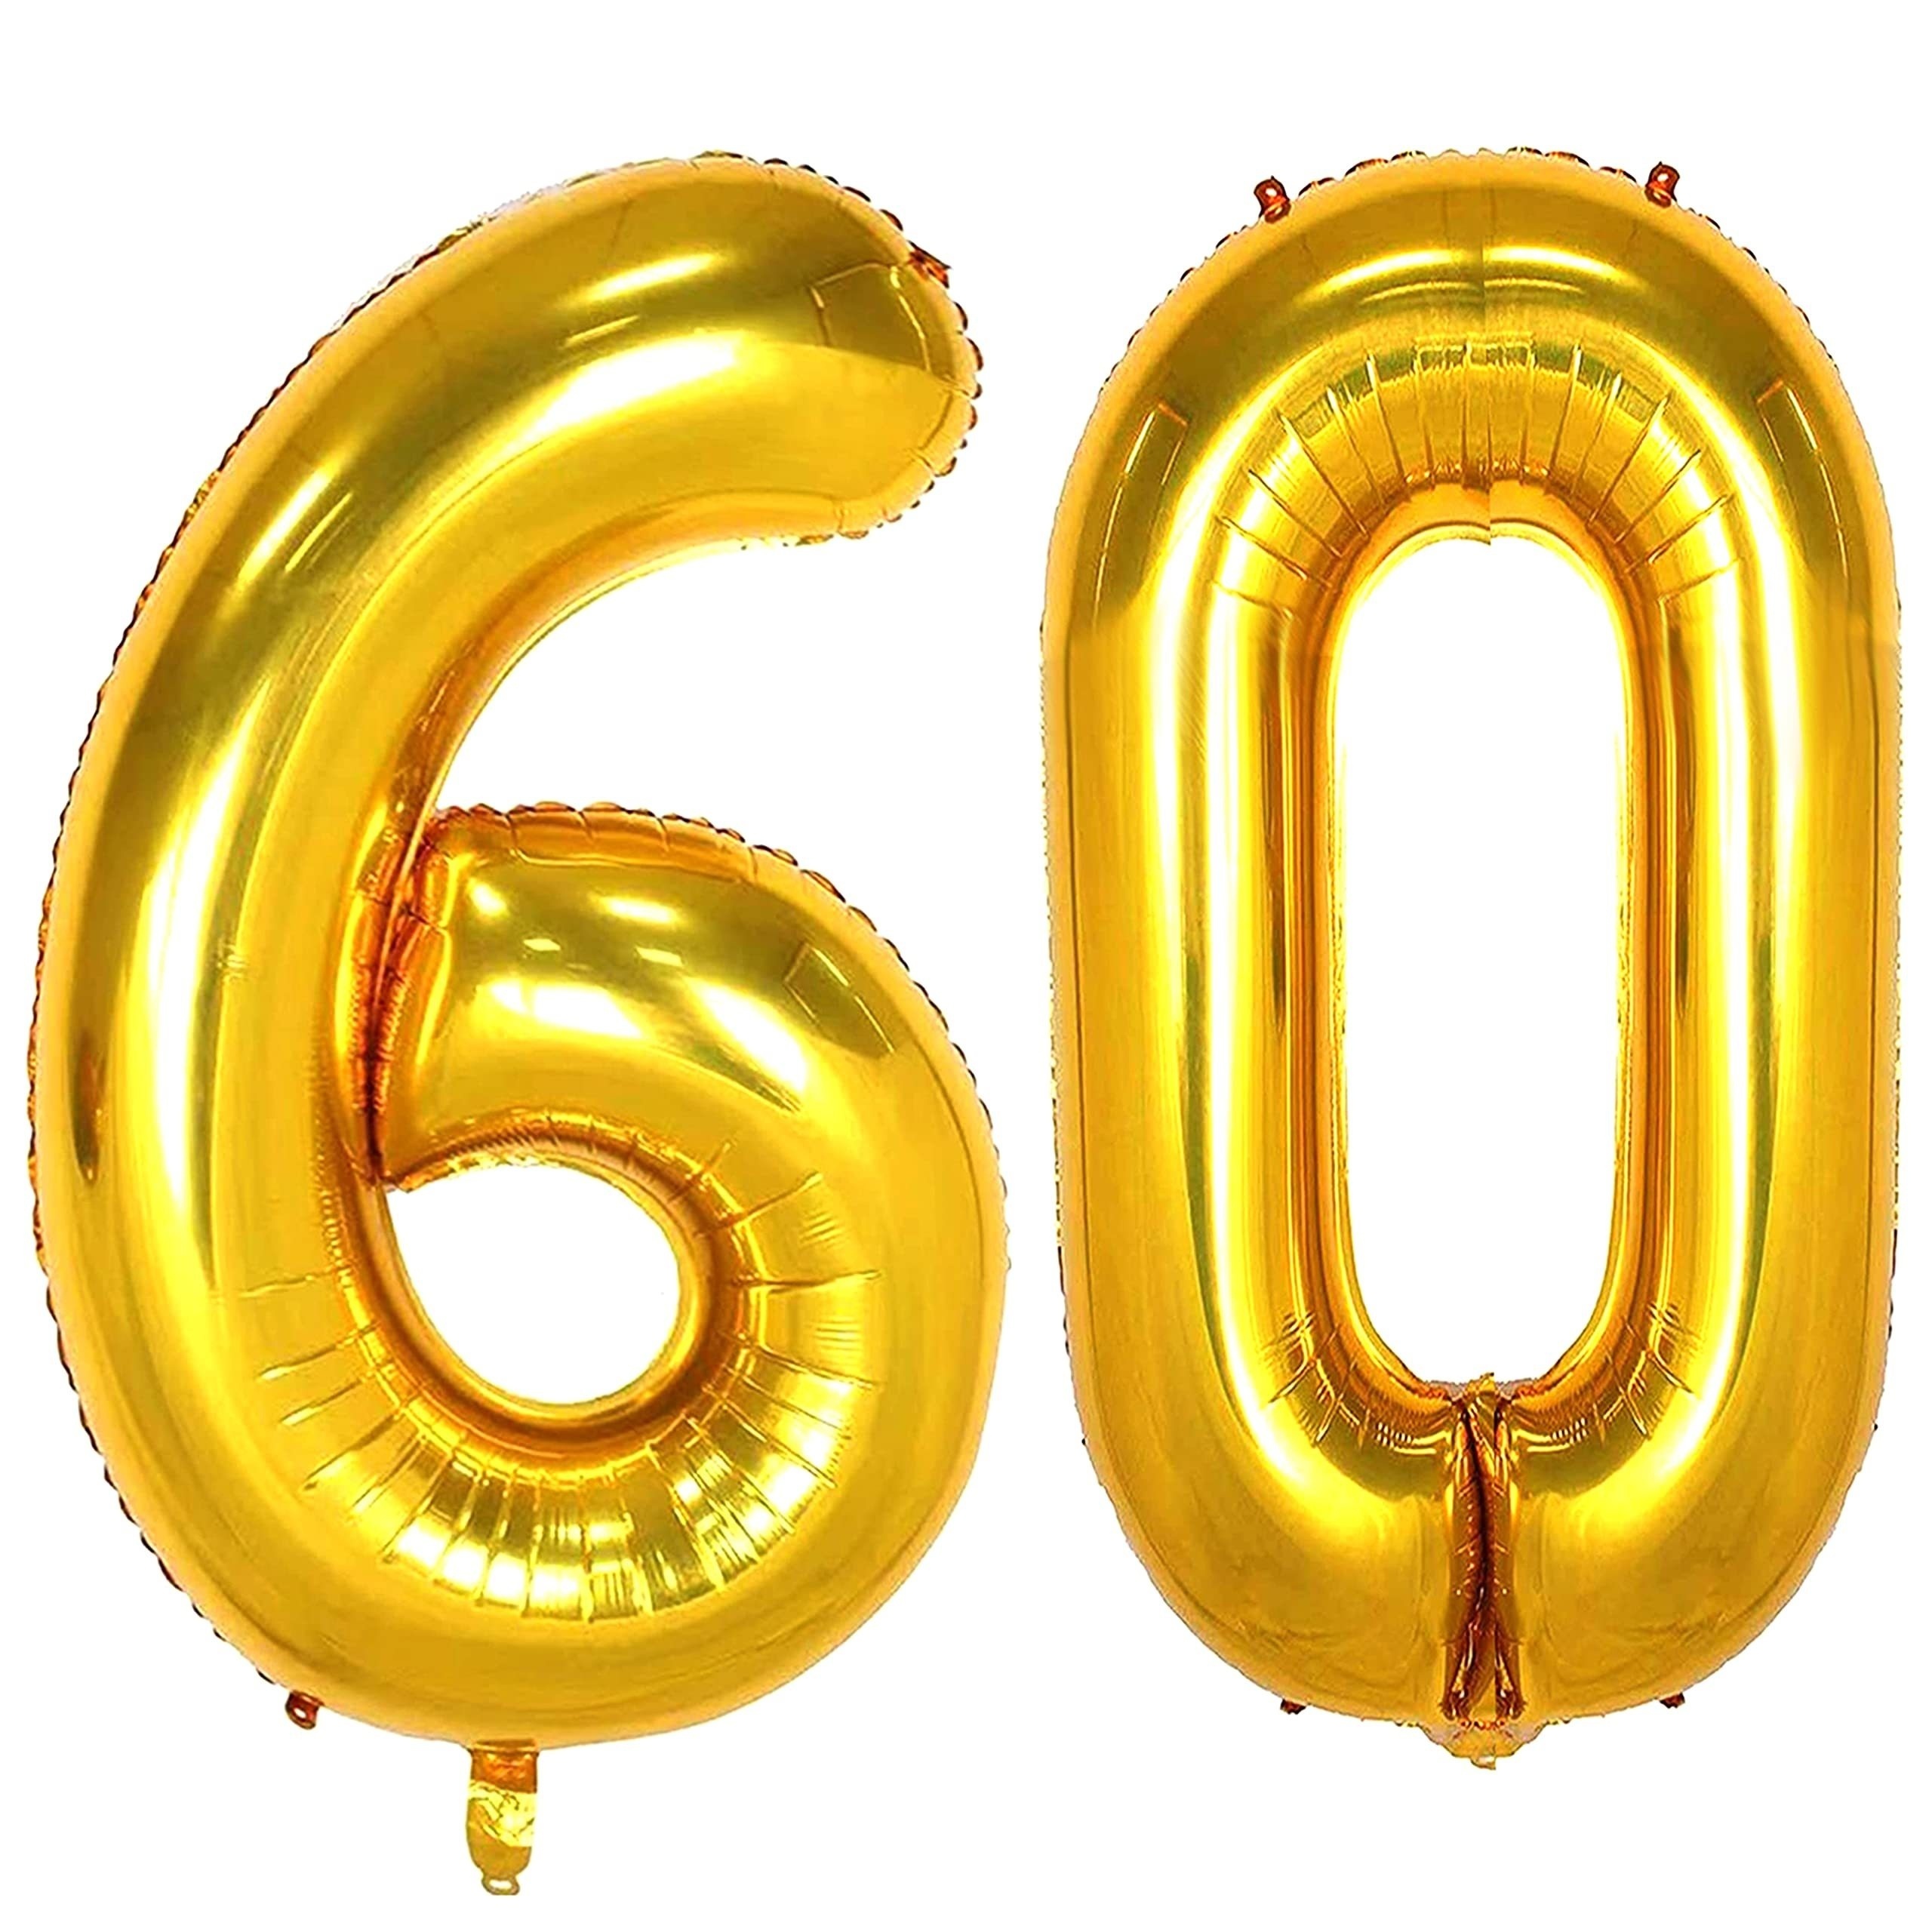  Globo de 30 cumpleaños de 30 cumpleaños, decoraciones de feliz cumpleaños  30, suministros de fiesta de cumpleaños número 30, globos de aluminio de  Mylar de oro rosa con el número 30